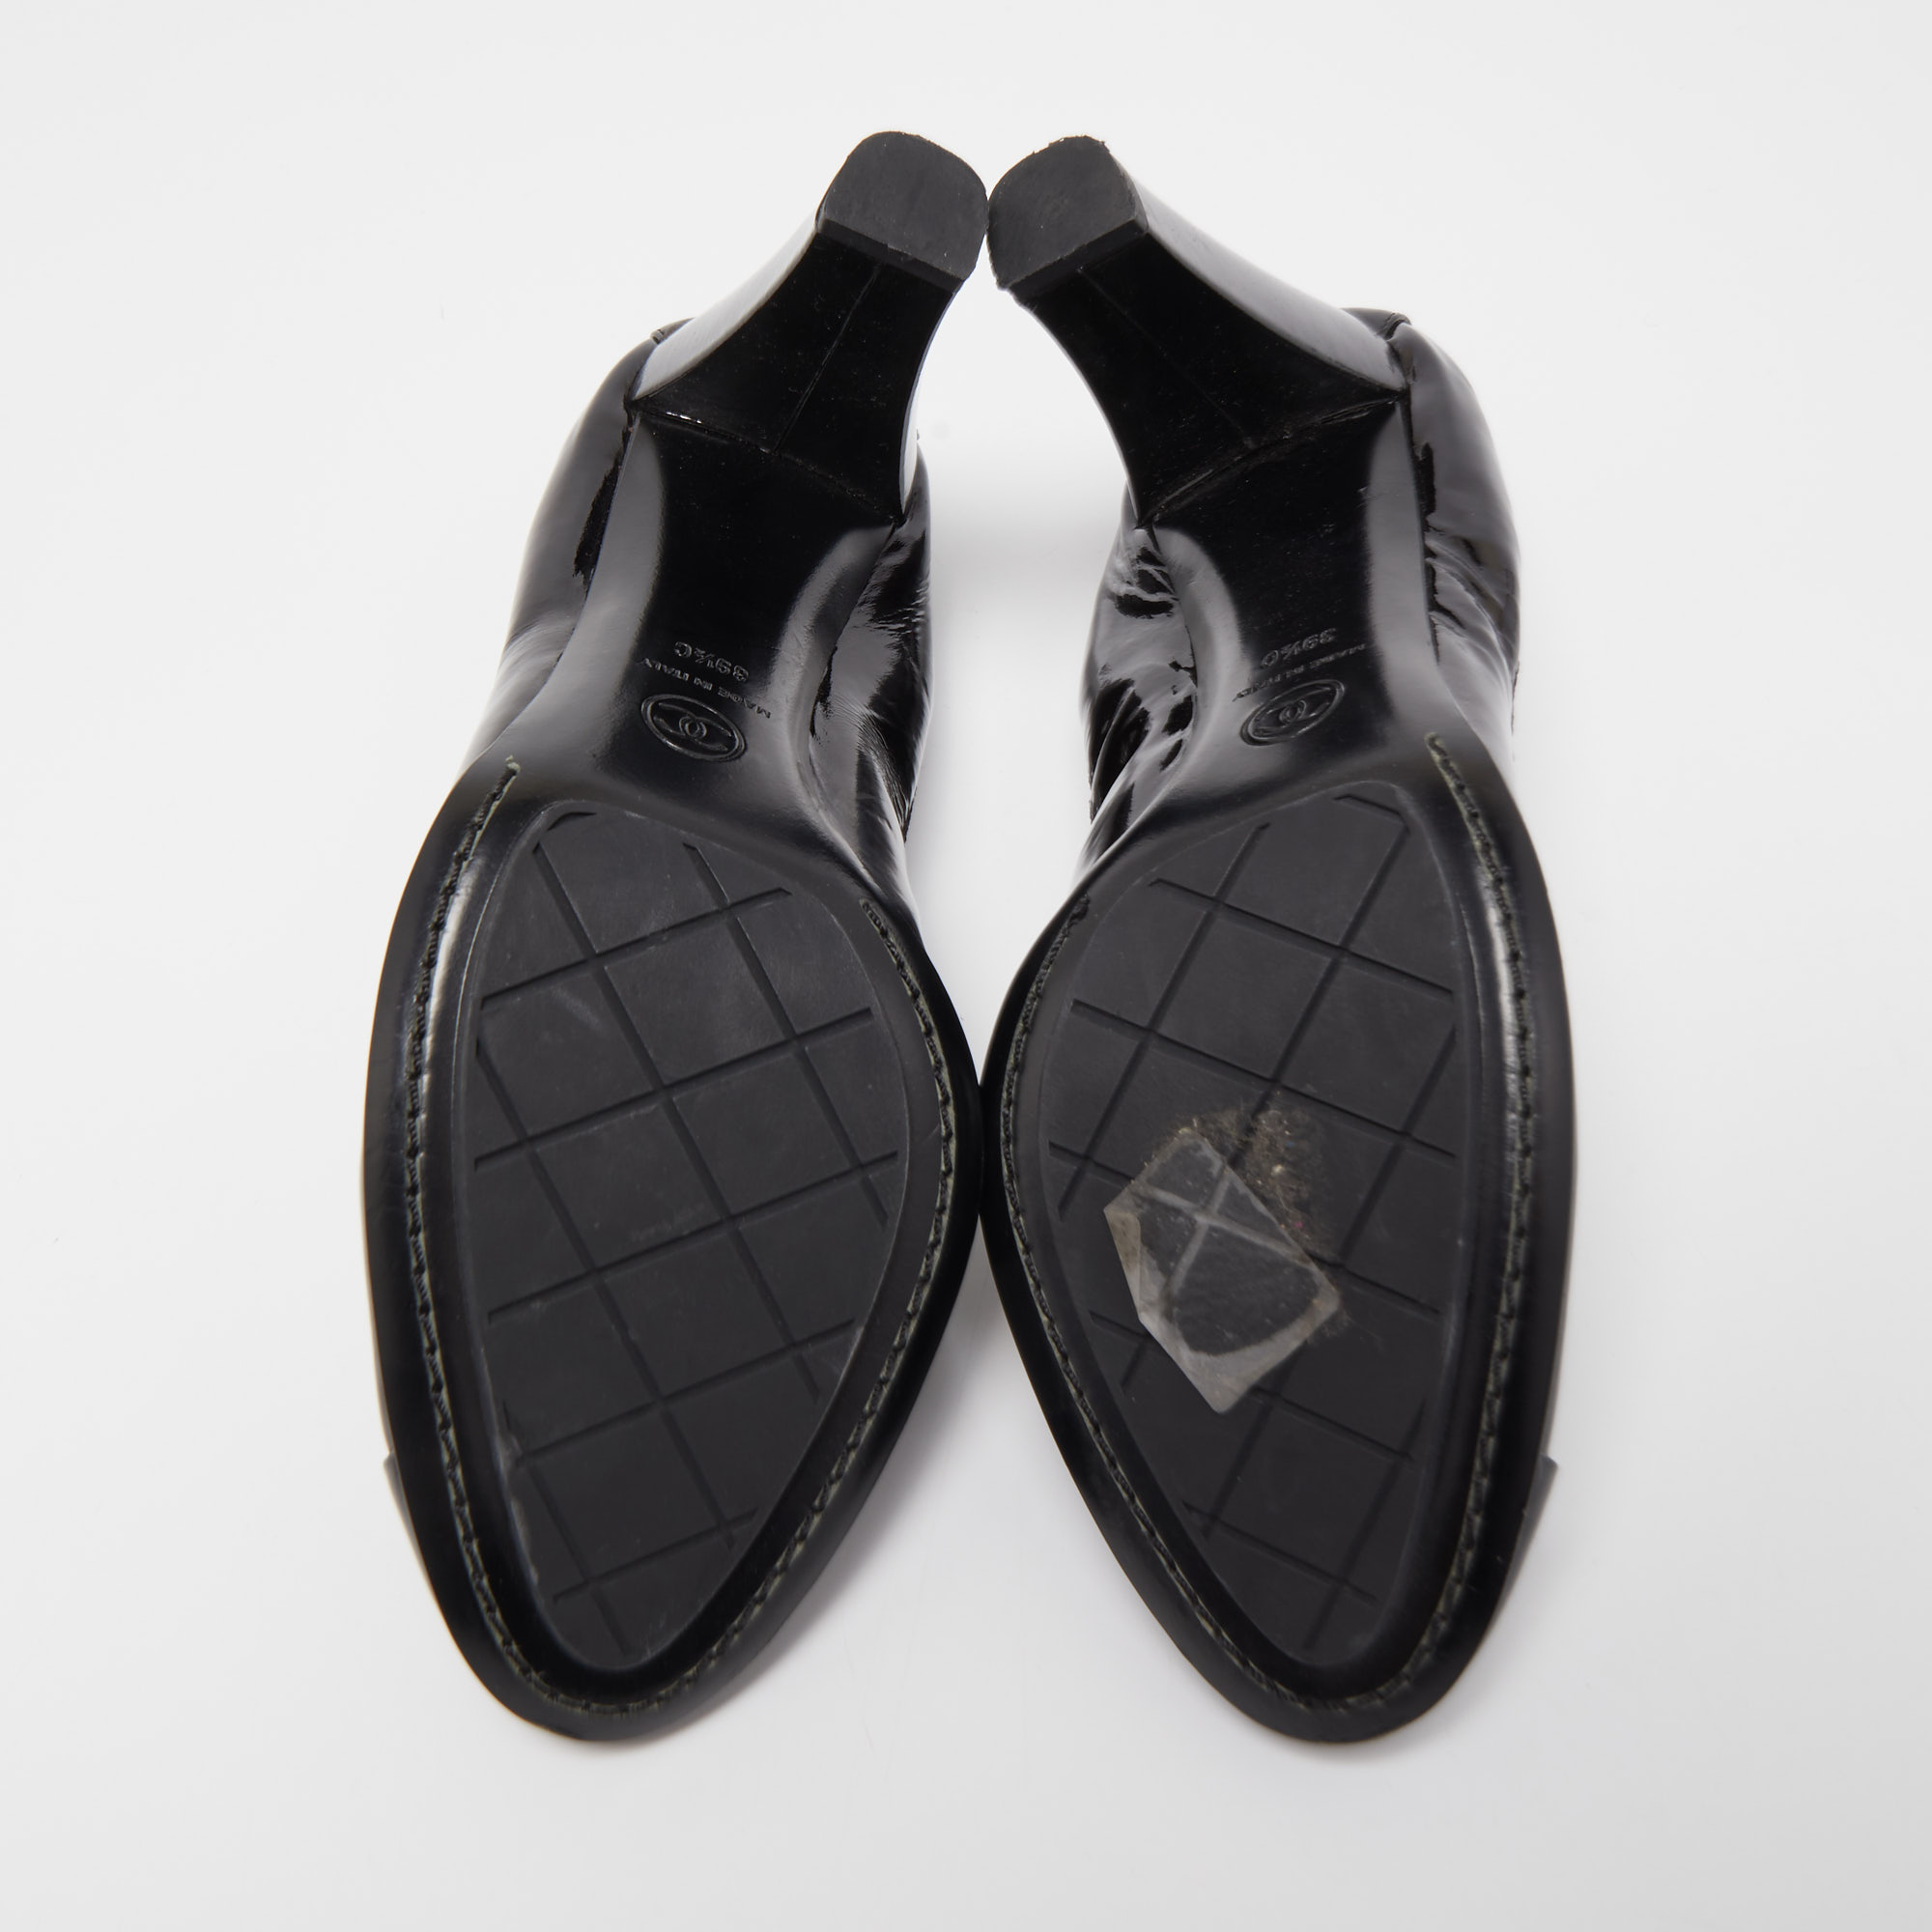 Chanel Black Patent Leather CC Scrunch Pumps Size 39.5